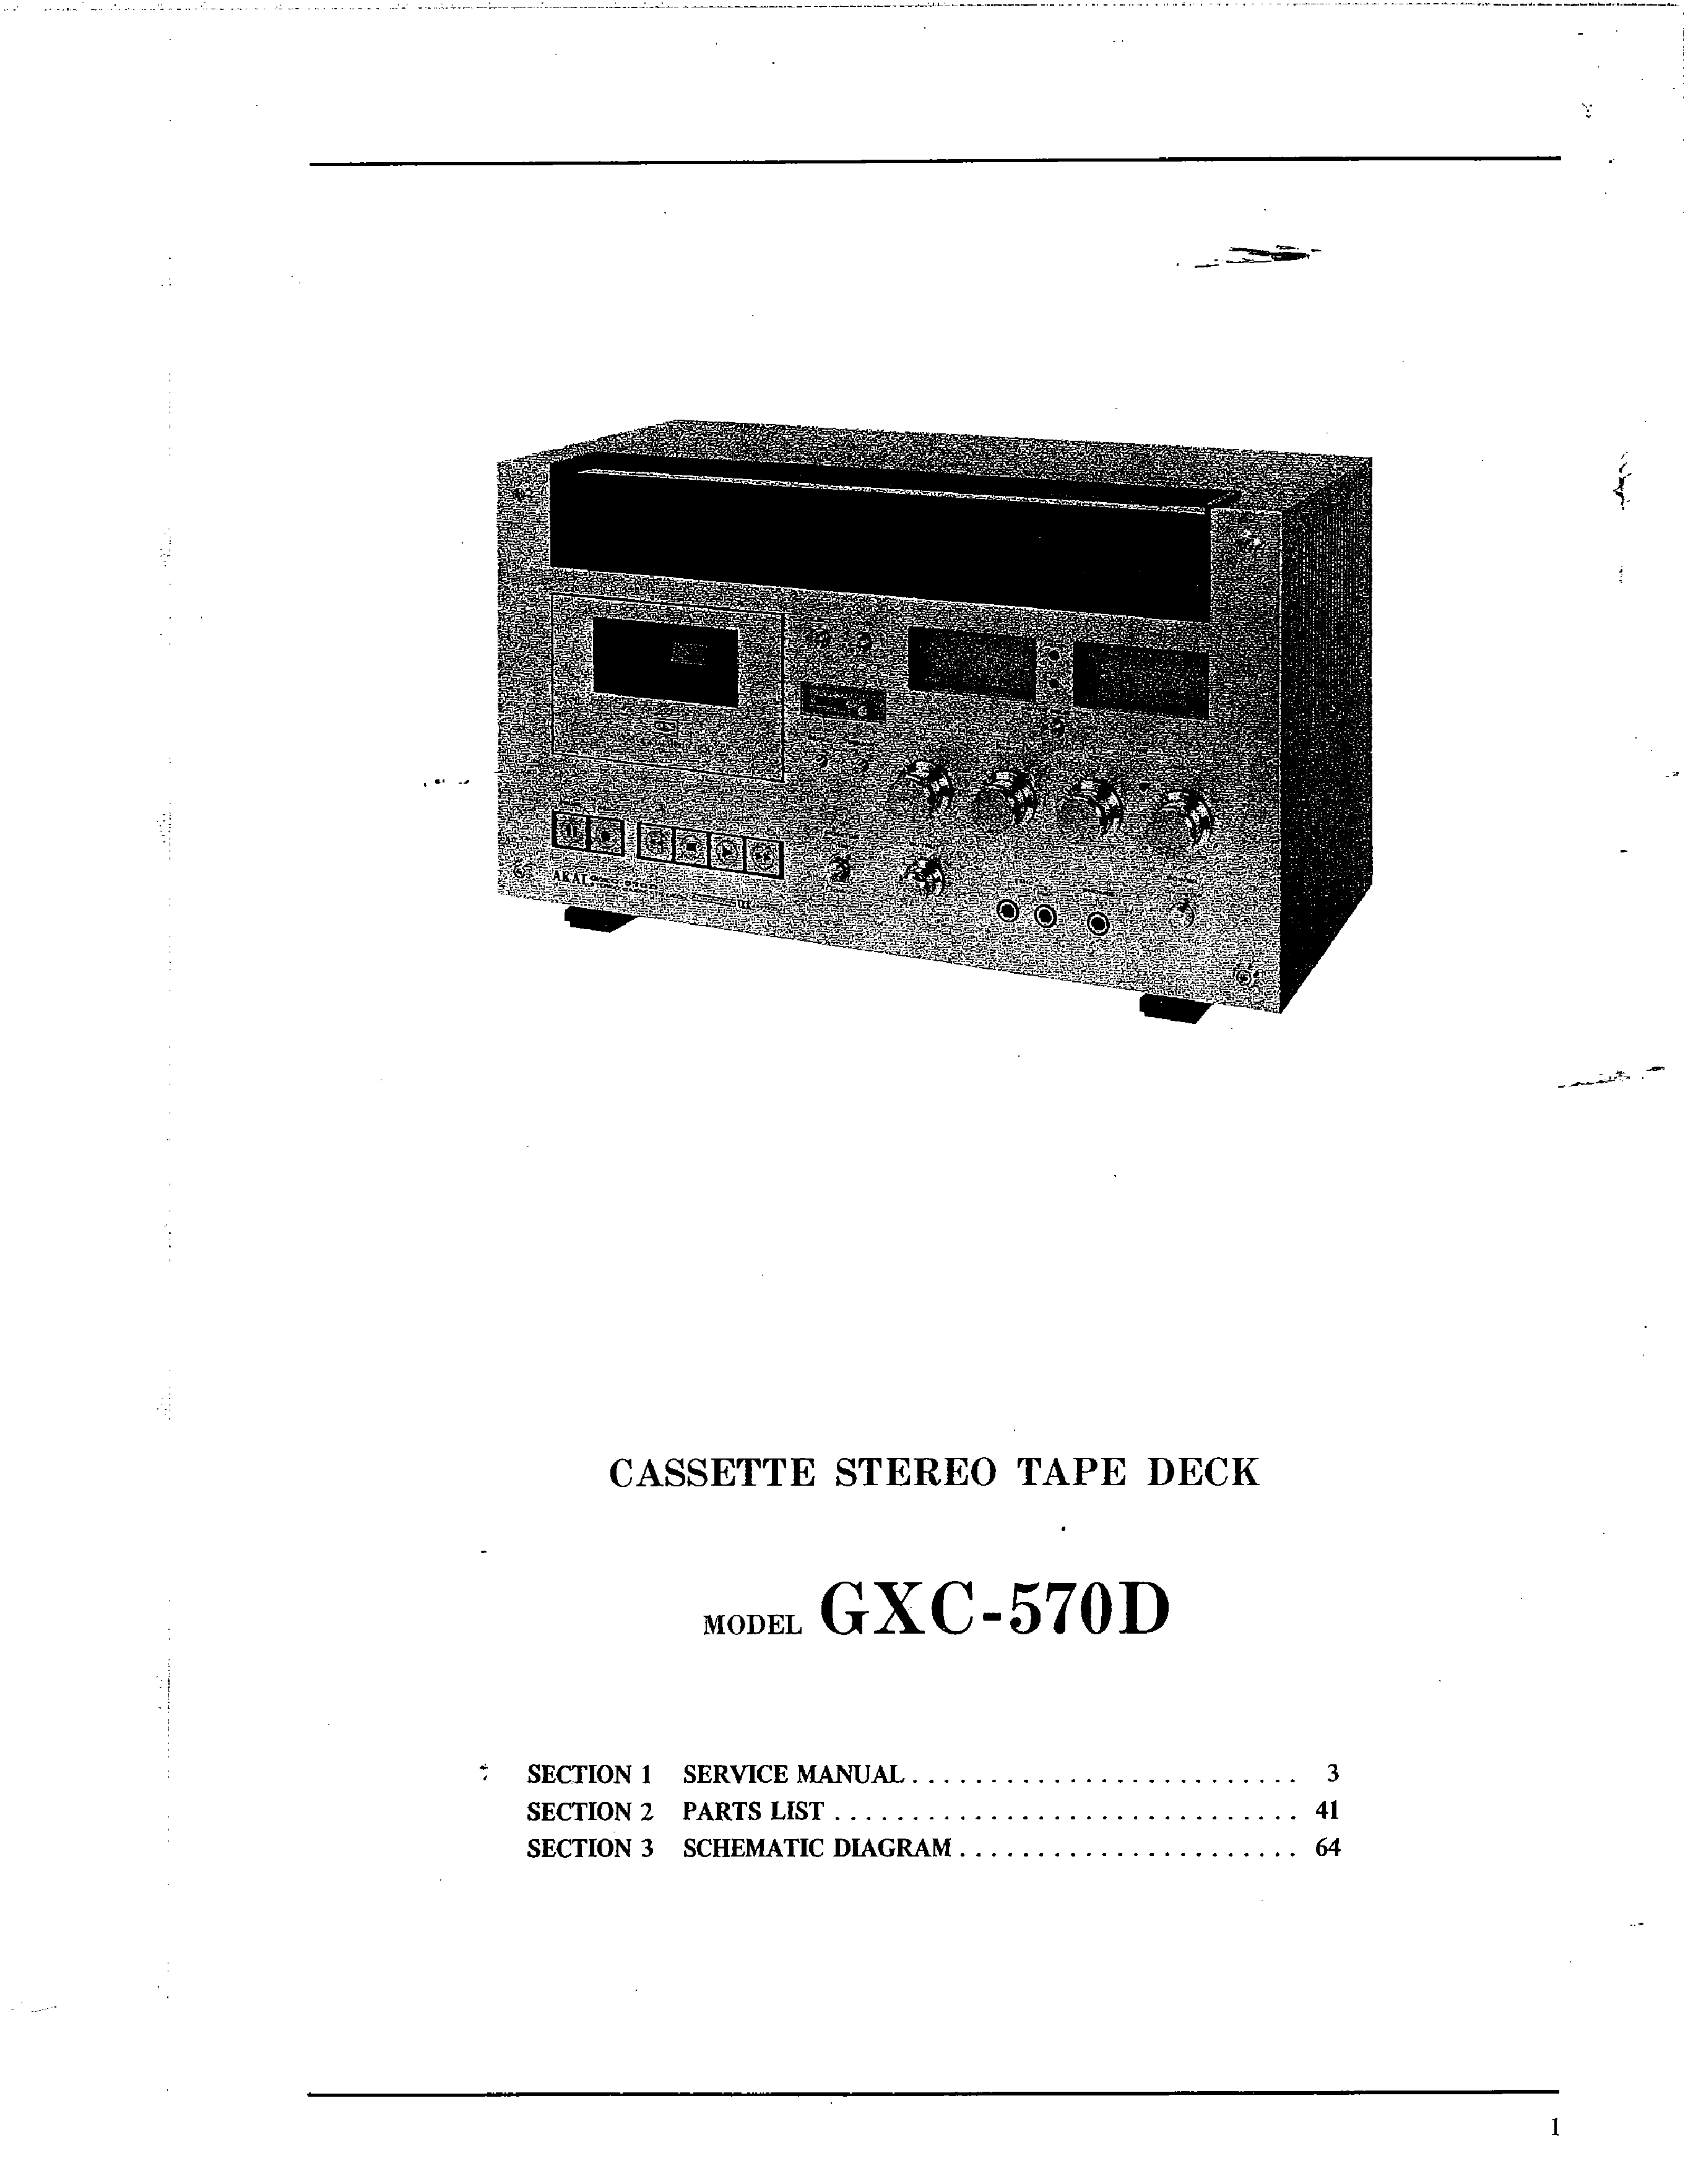 Service Manual-Anleitung für Akai GXC-570 D 